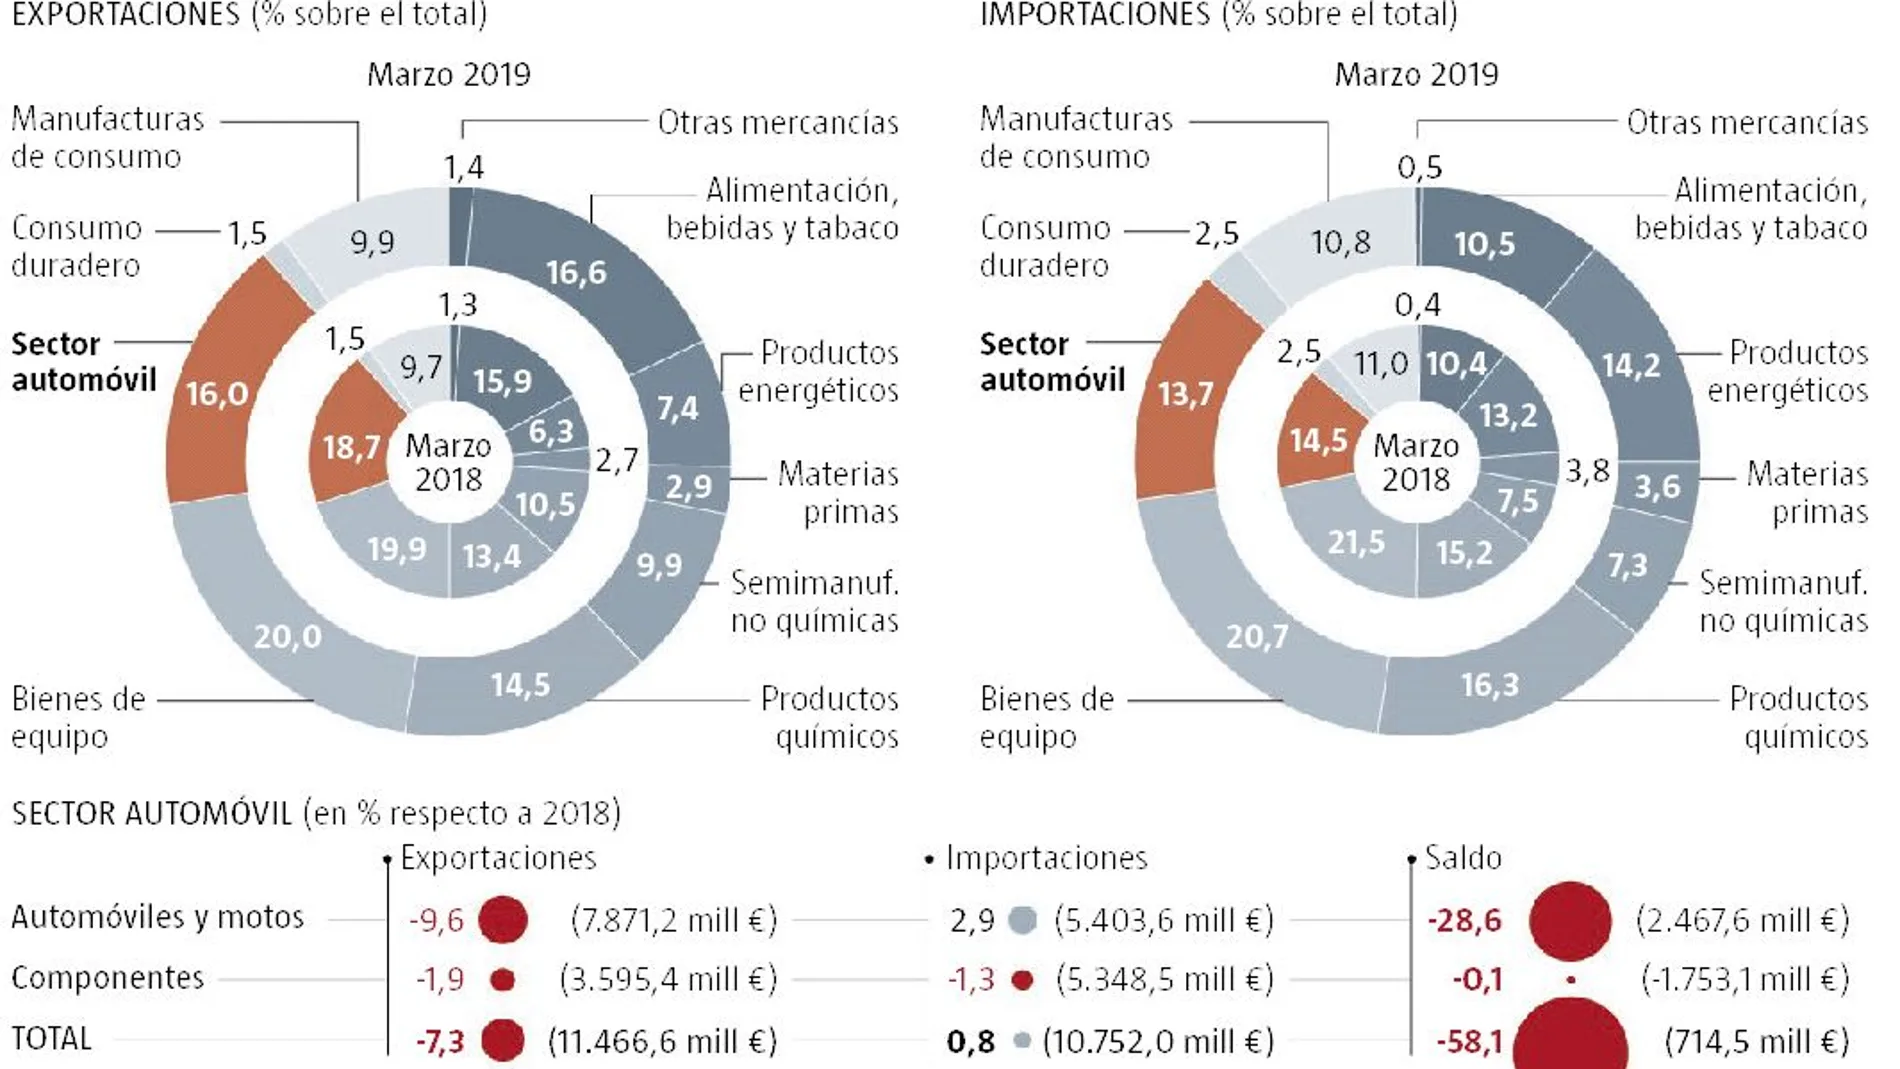 El miedo a una recesión hunde la venta de automóviles españoles en el exterior